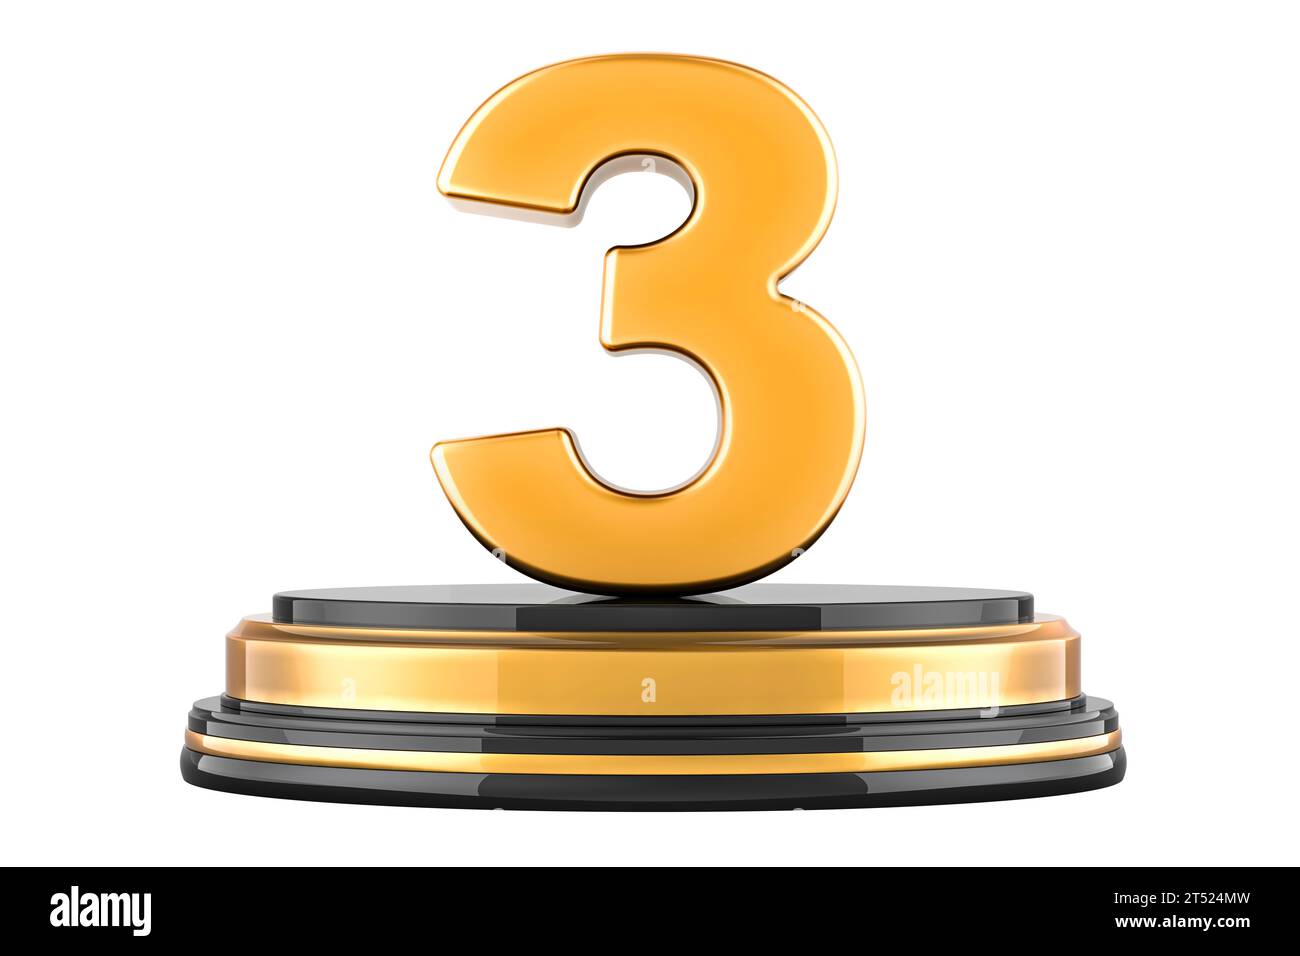 Golden 3 trois sur le podium, concept de récompense. Rendu 3D isolé sur fond blanc Banque D'Images